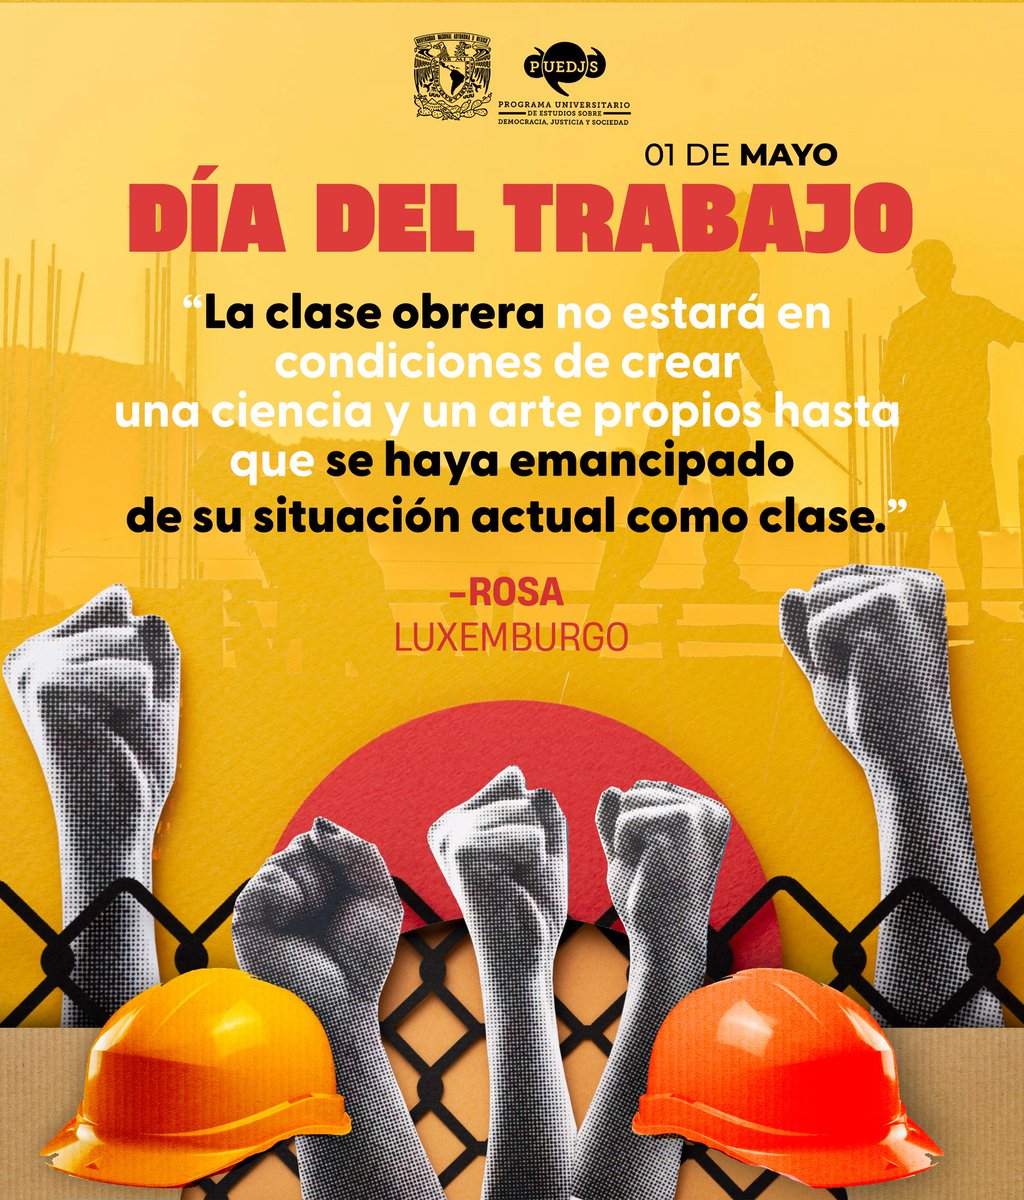 En el #DíaDelTrabajo, es importante reflexionar sobre el valor y la contribución de la clase trabajadora al progreso de la humanidad🧑‍🏭👷‍♂️ Sigamos luchando por condiciones laborales justas, dignas, libres y equitativas✊🏻 #1DeMayo